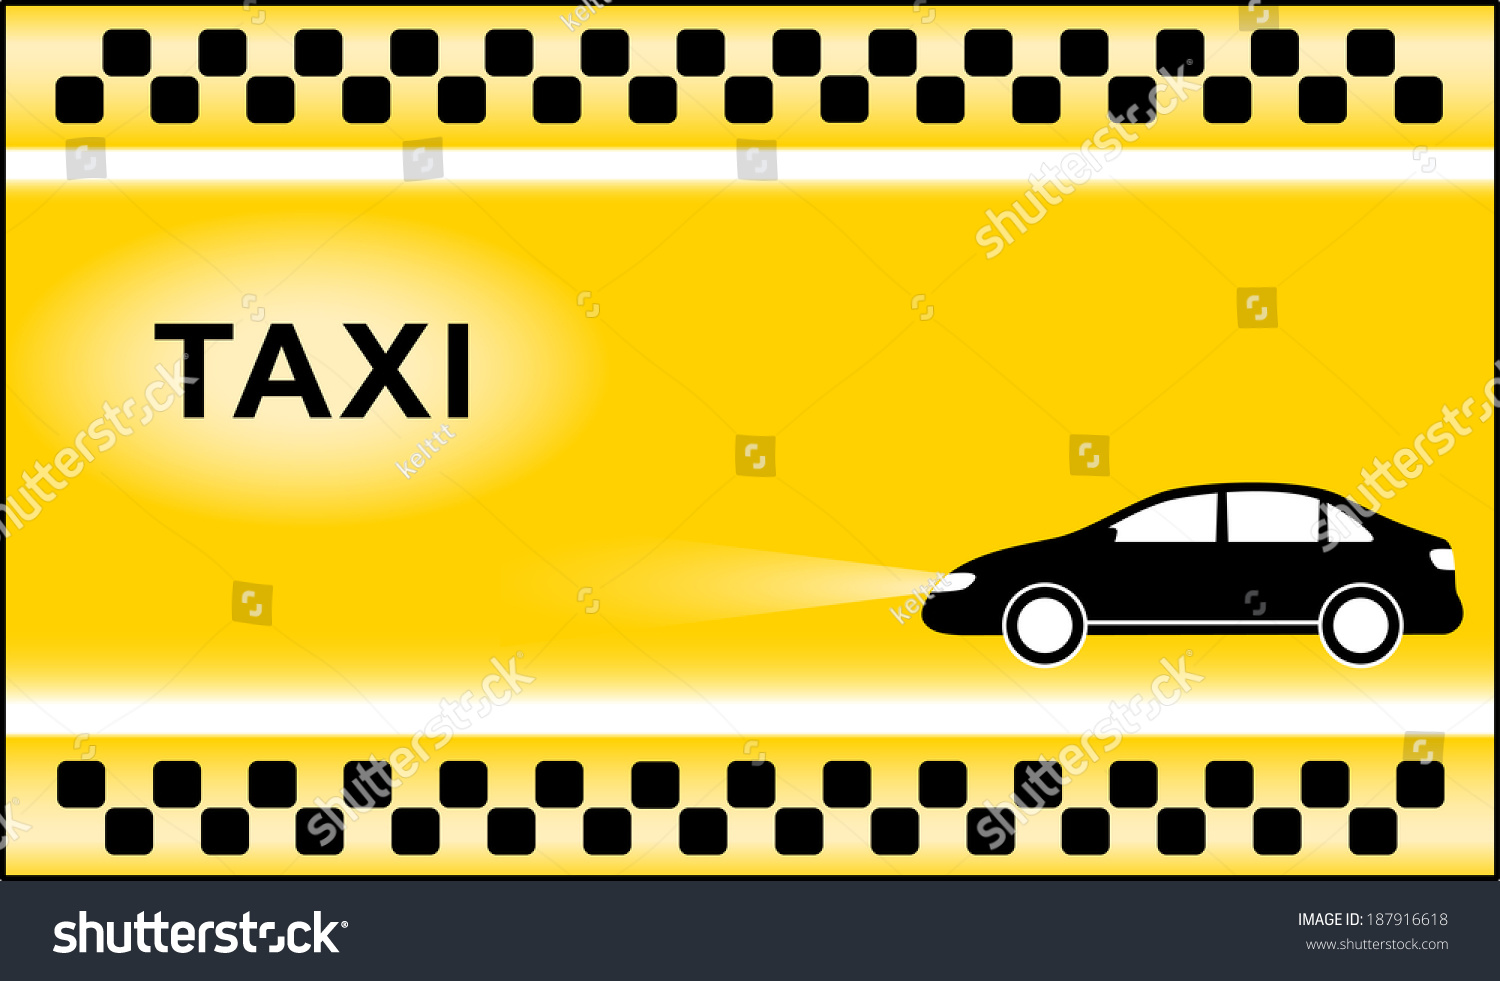 Фон для визитки такси